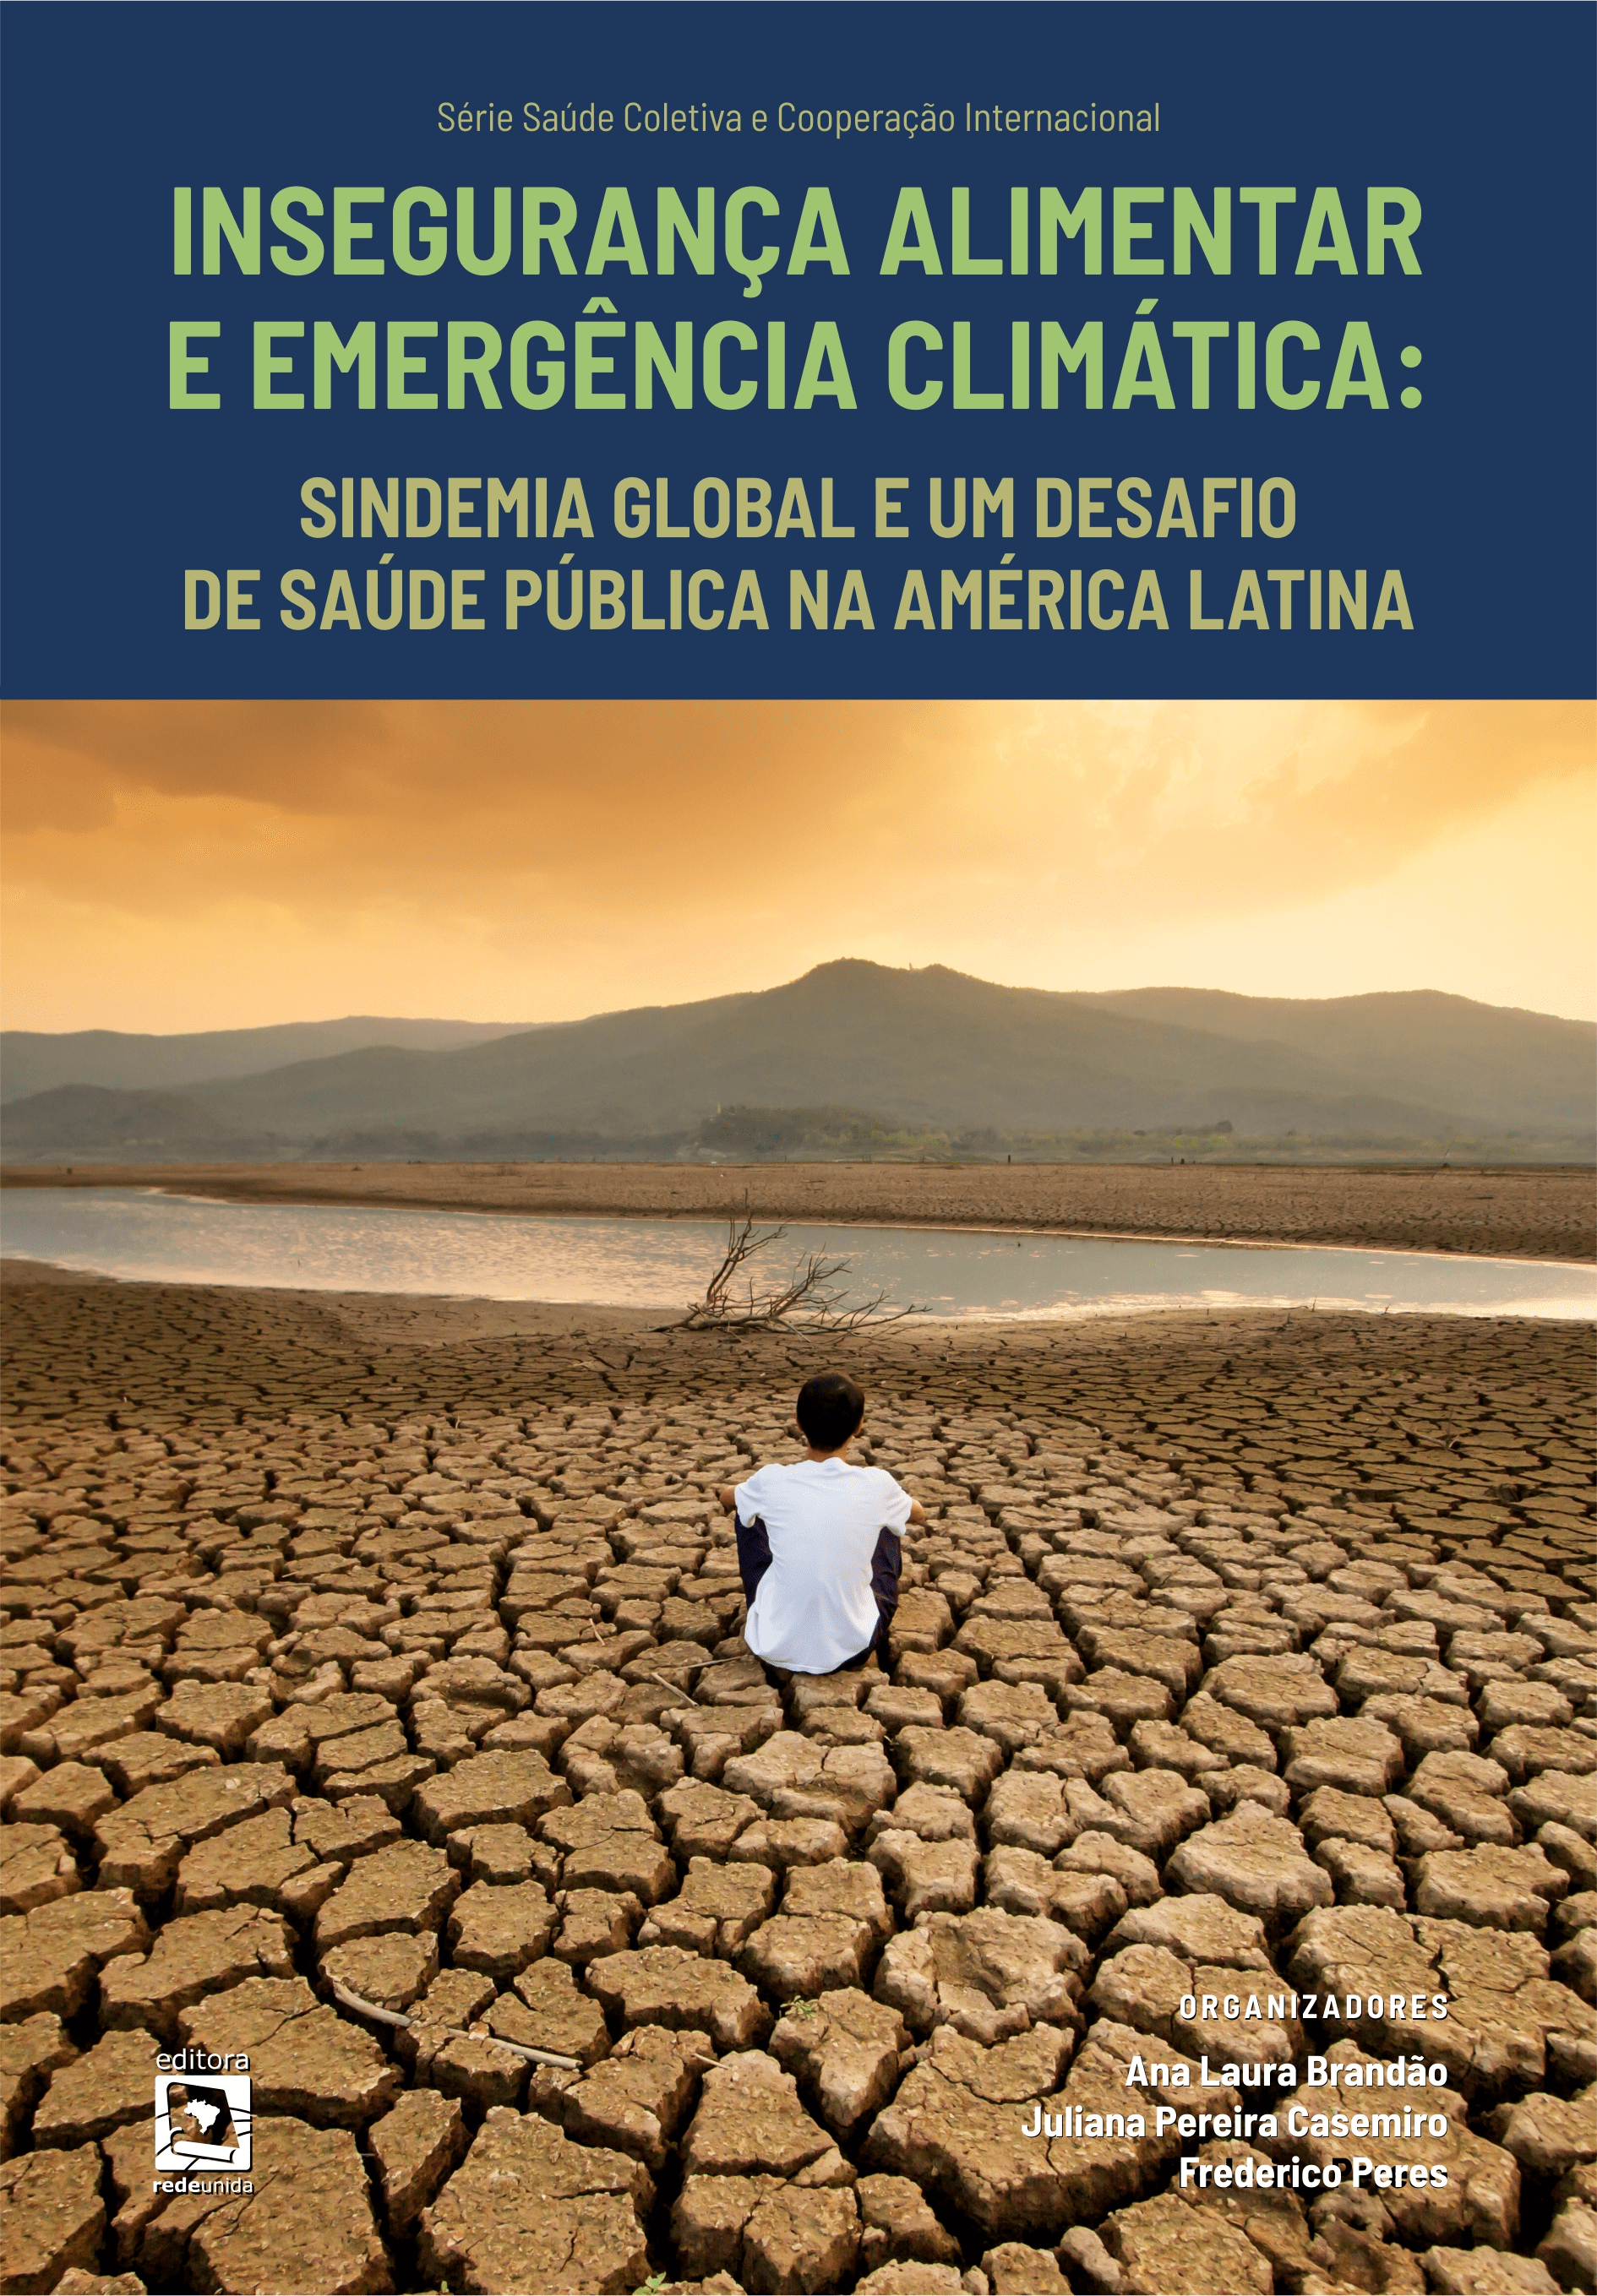 Insegurança alimentar e emergência climática: sindemia global e um desafio de saúde pública na América Latina